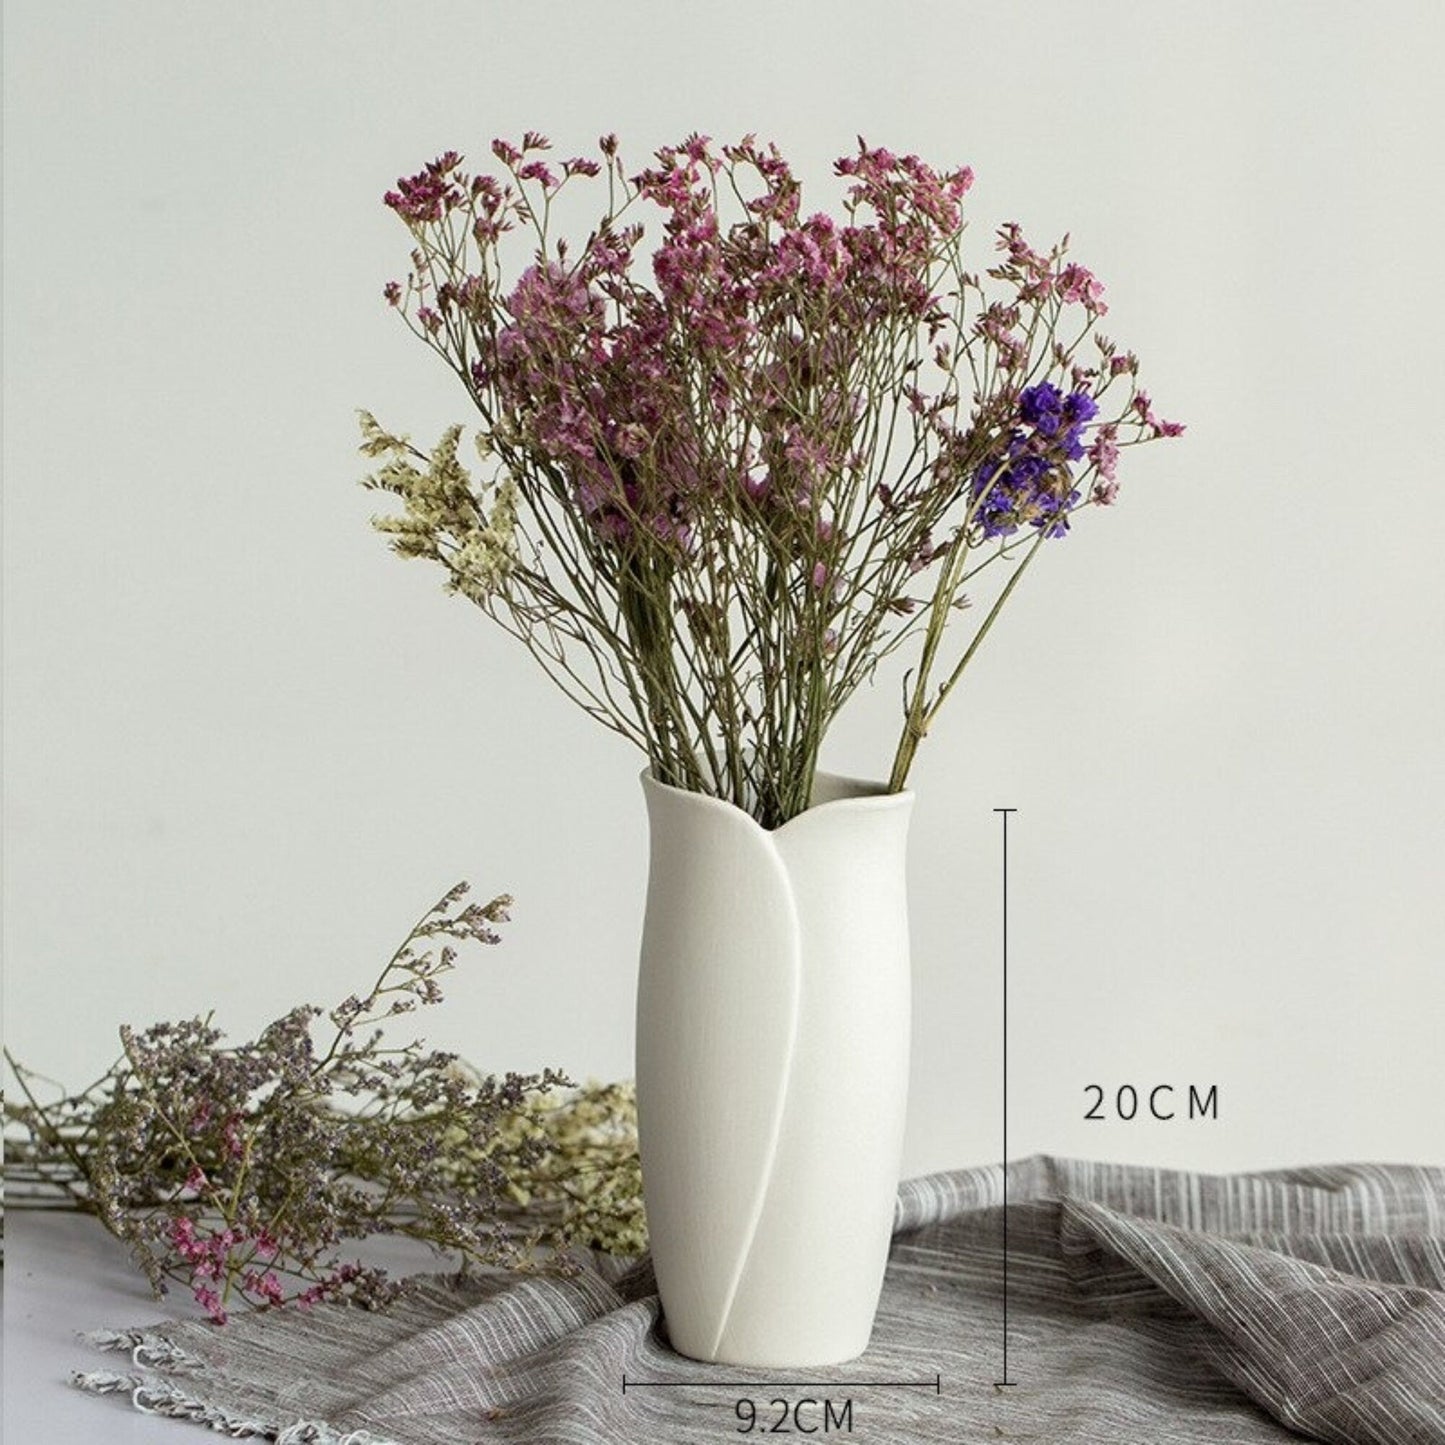 Abstract White Flower Vase | Decorative Vase, Minimalist Vase, Vases For Flowers, White Vase, Pampas Grass, Flower Pot - -